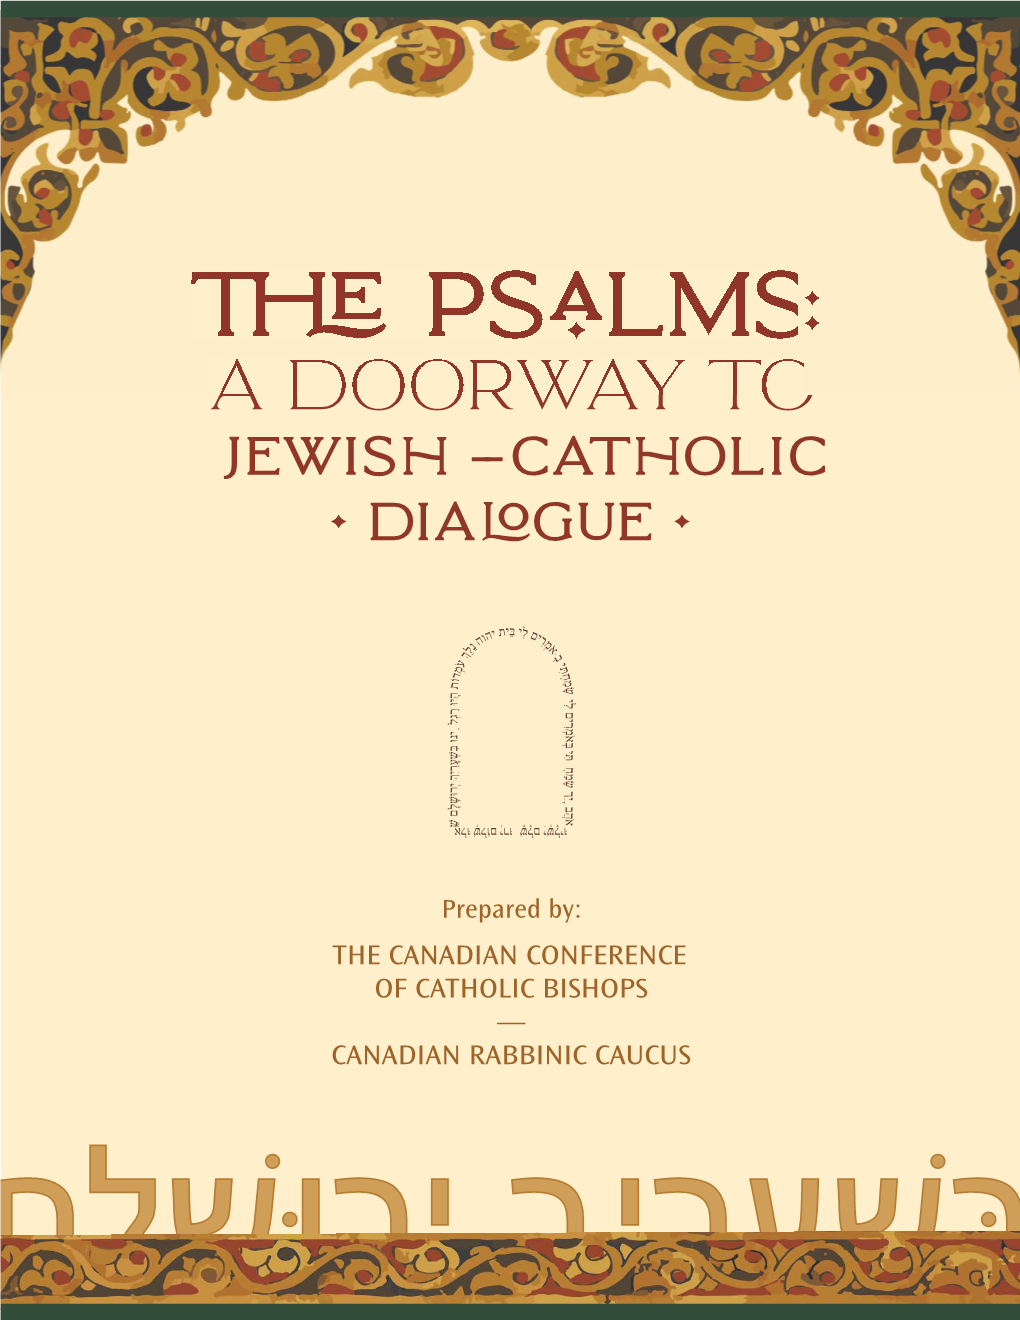 A Doorway to Jewish-Catholic Dialogue